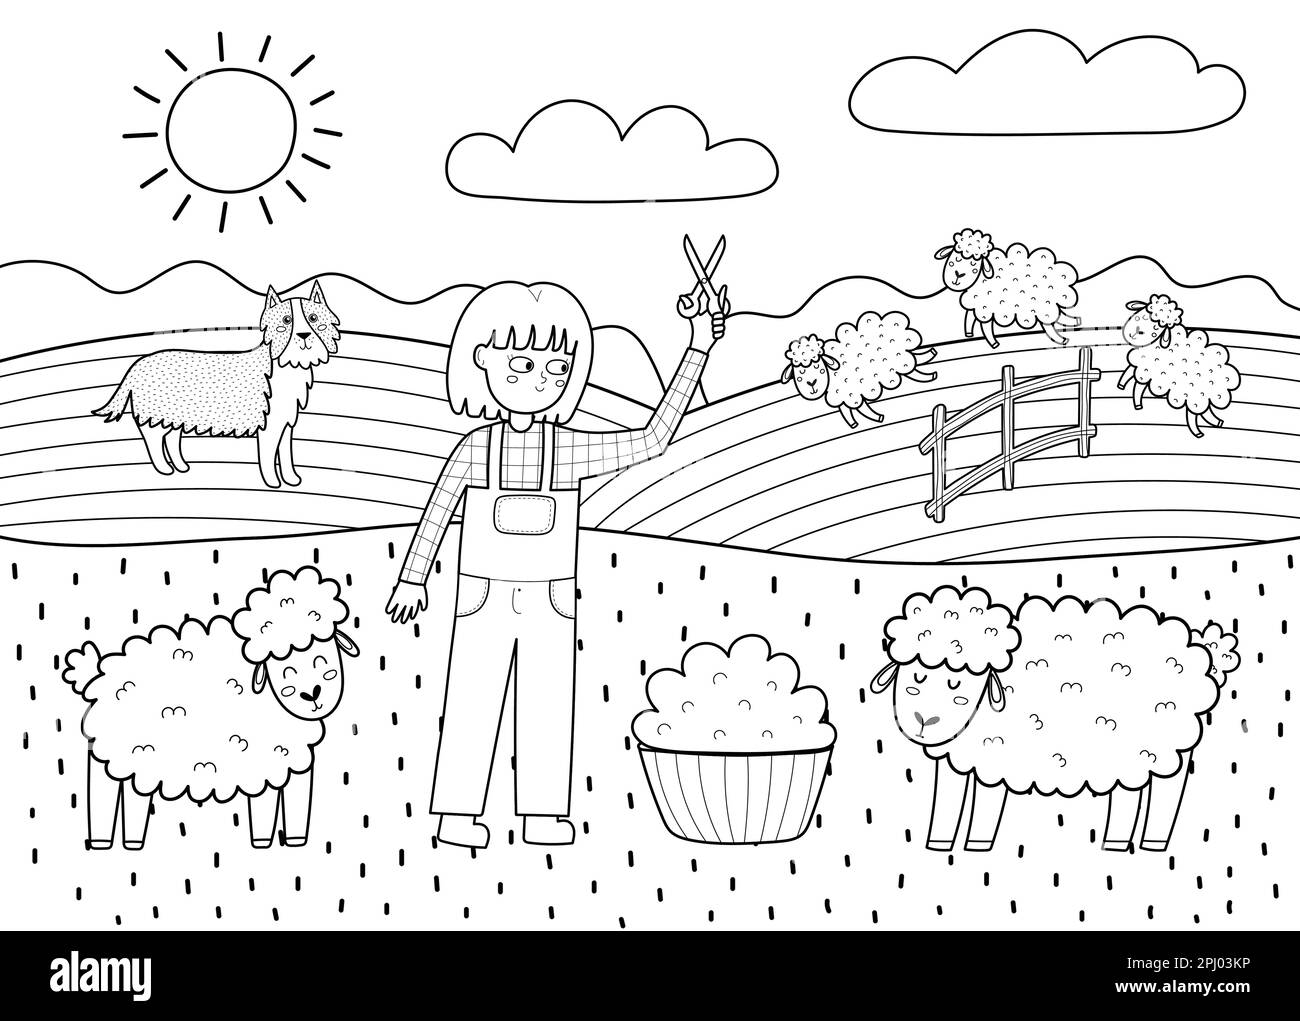 Auf dem Bauernposter mit süßen Tieren in Schwarz und Weiß. Mädchen, die Schafe scheren und Wolle herstellen Stock Vektor